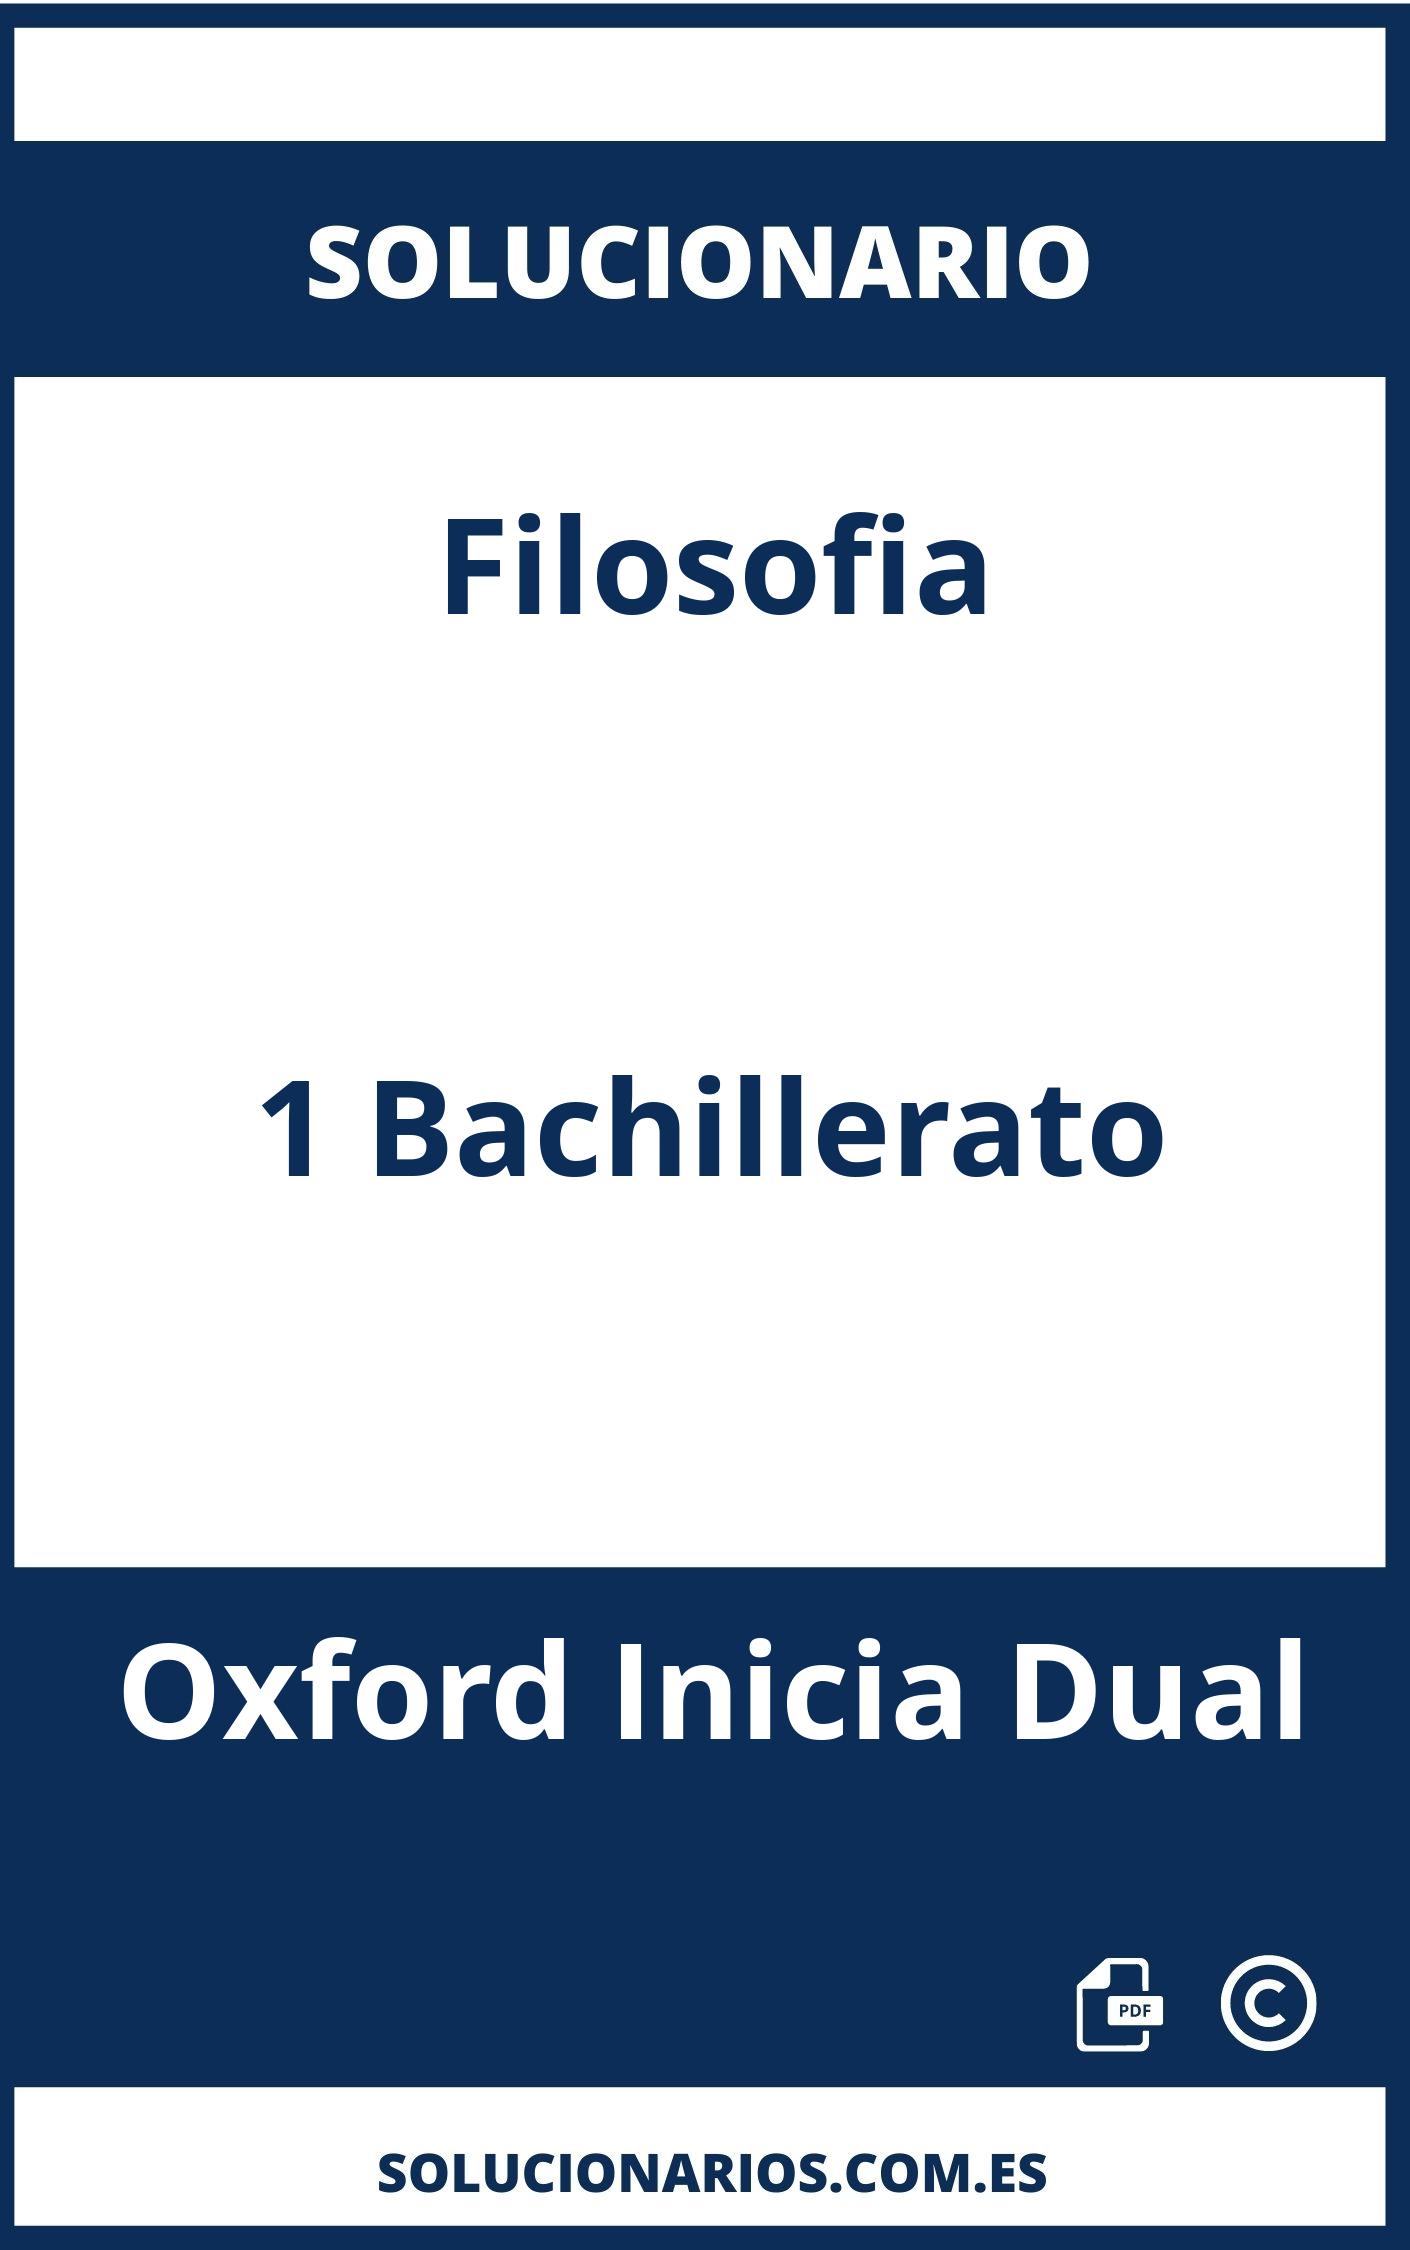 Solucionario Filosofia 1 Bachillerato Oxford Inicia Dual